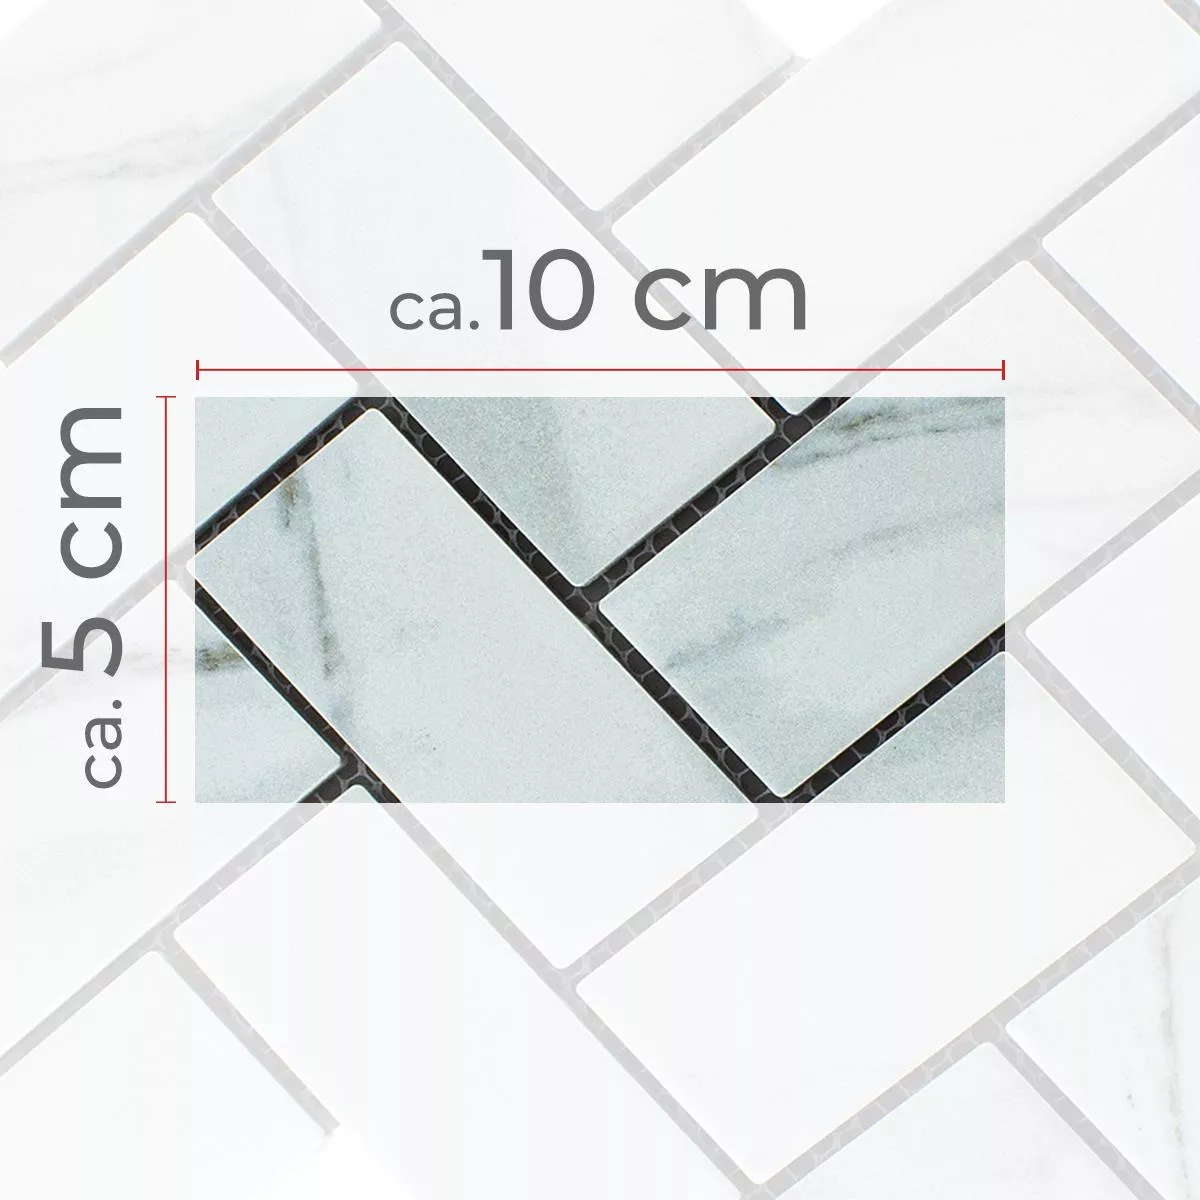 Campione Ceramica Mosaico Fernley Lisca Di Pesce Carrara Pietra Ottica Carrara